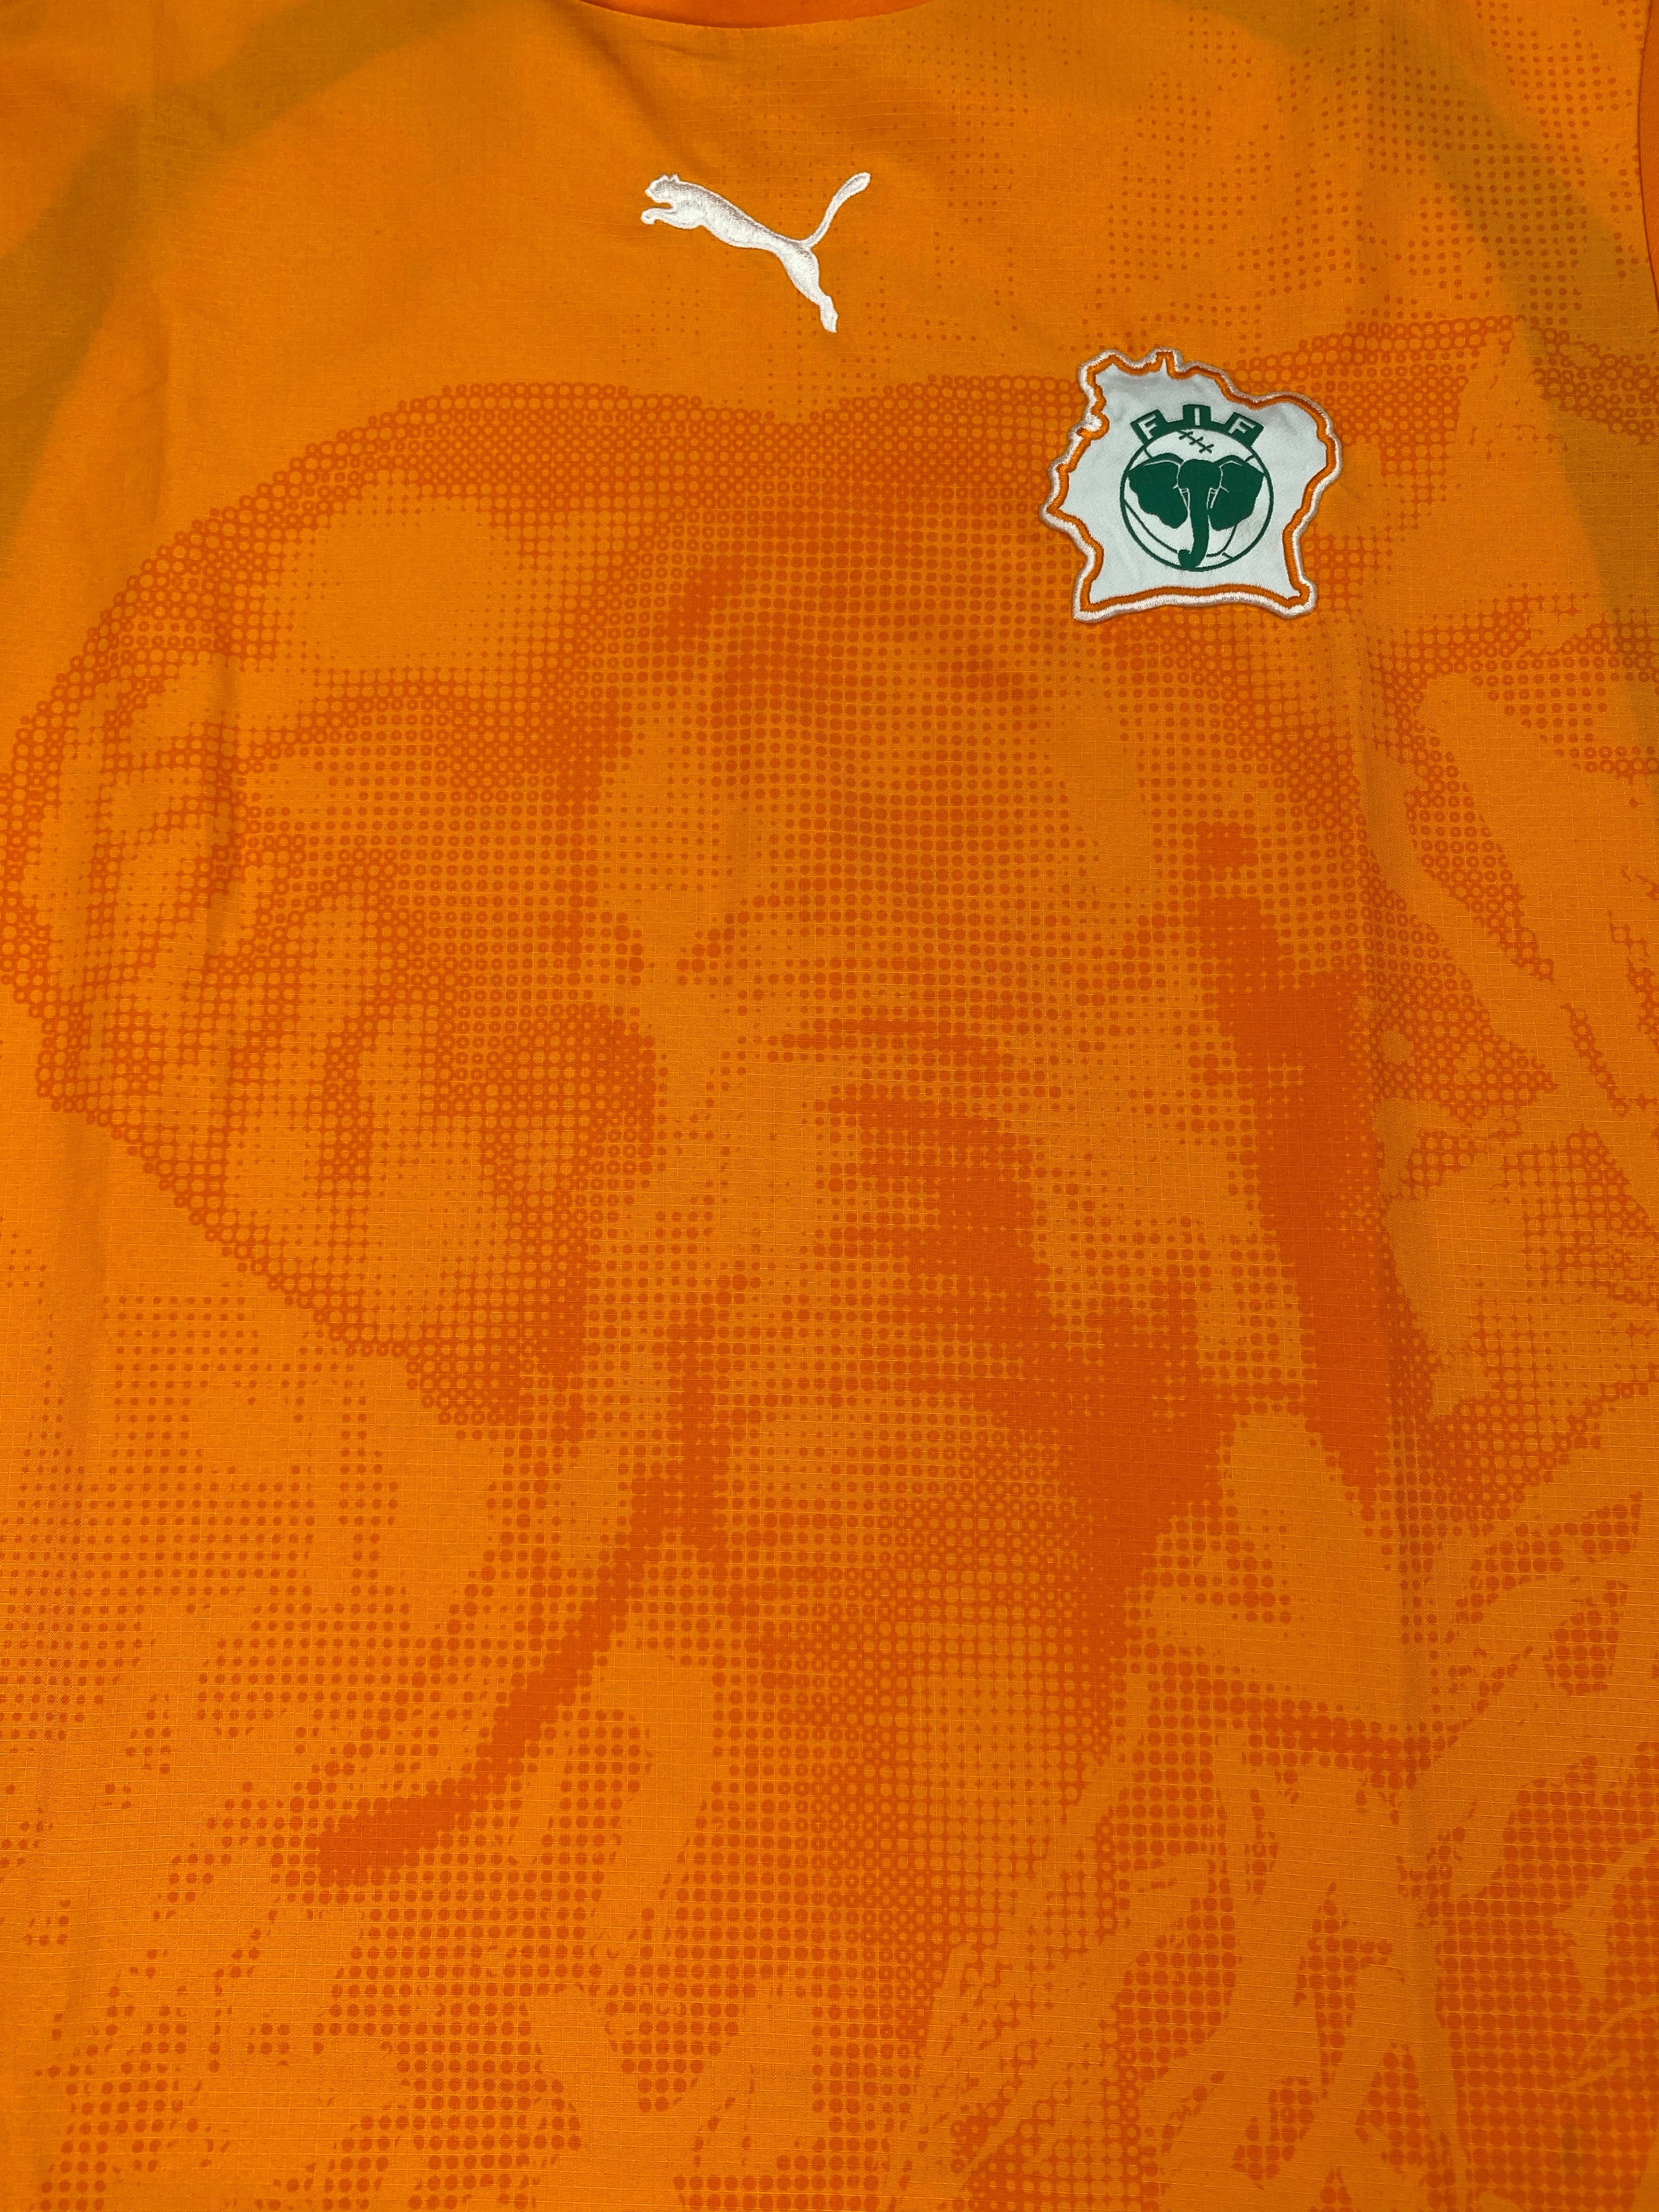 2006/07 Ivory Coast Home Shirt (M) 9.5/10